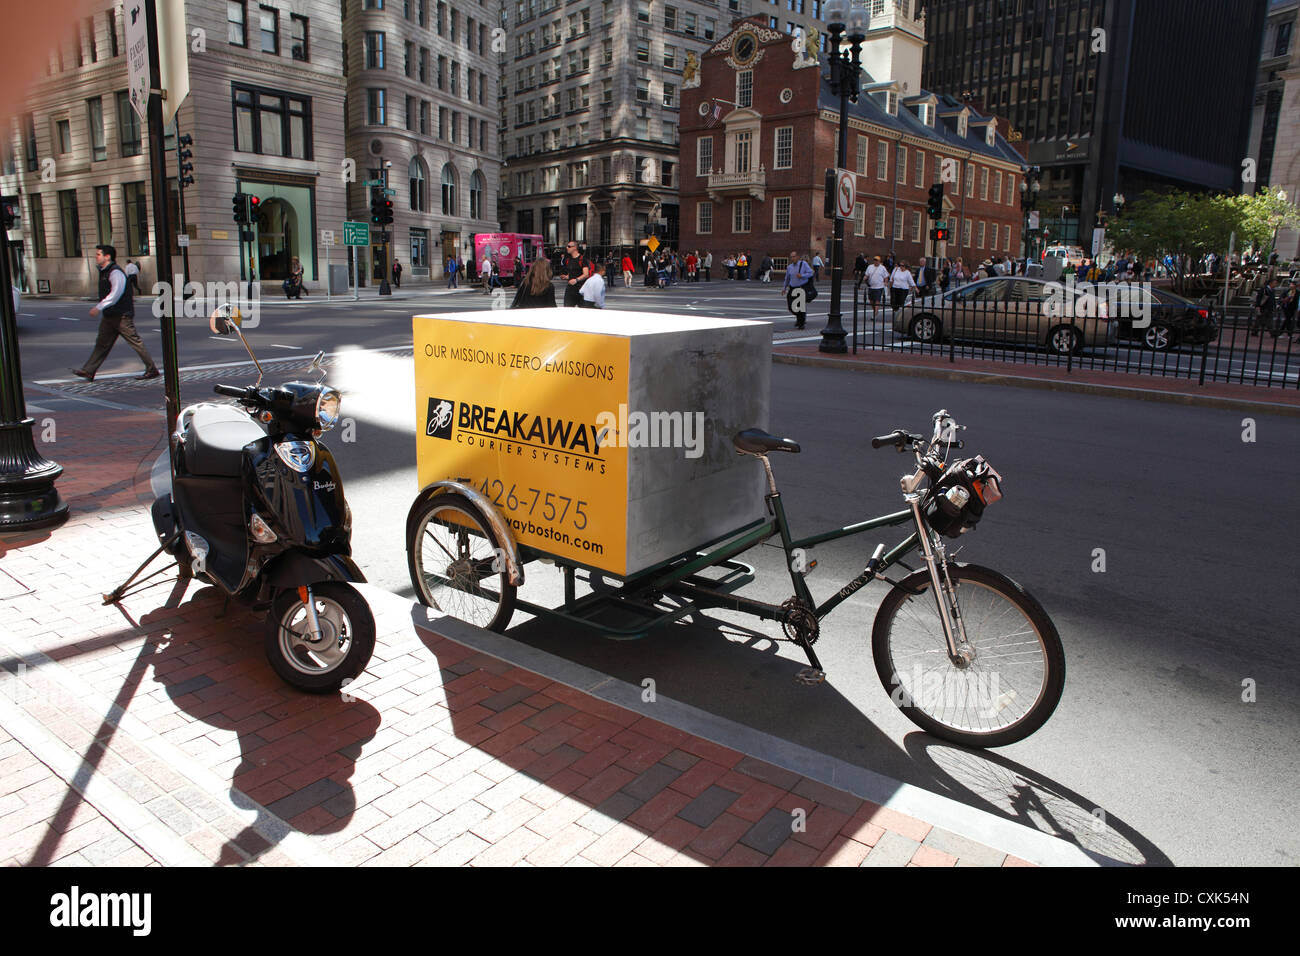 Fahrrad-Kurier-Fahrzeug abtrünnigen Kurier Systeme geparkt auf Congress Street Boston, Vereinigte Staaten Stockfoto